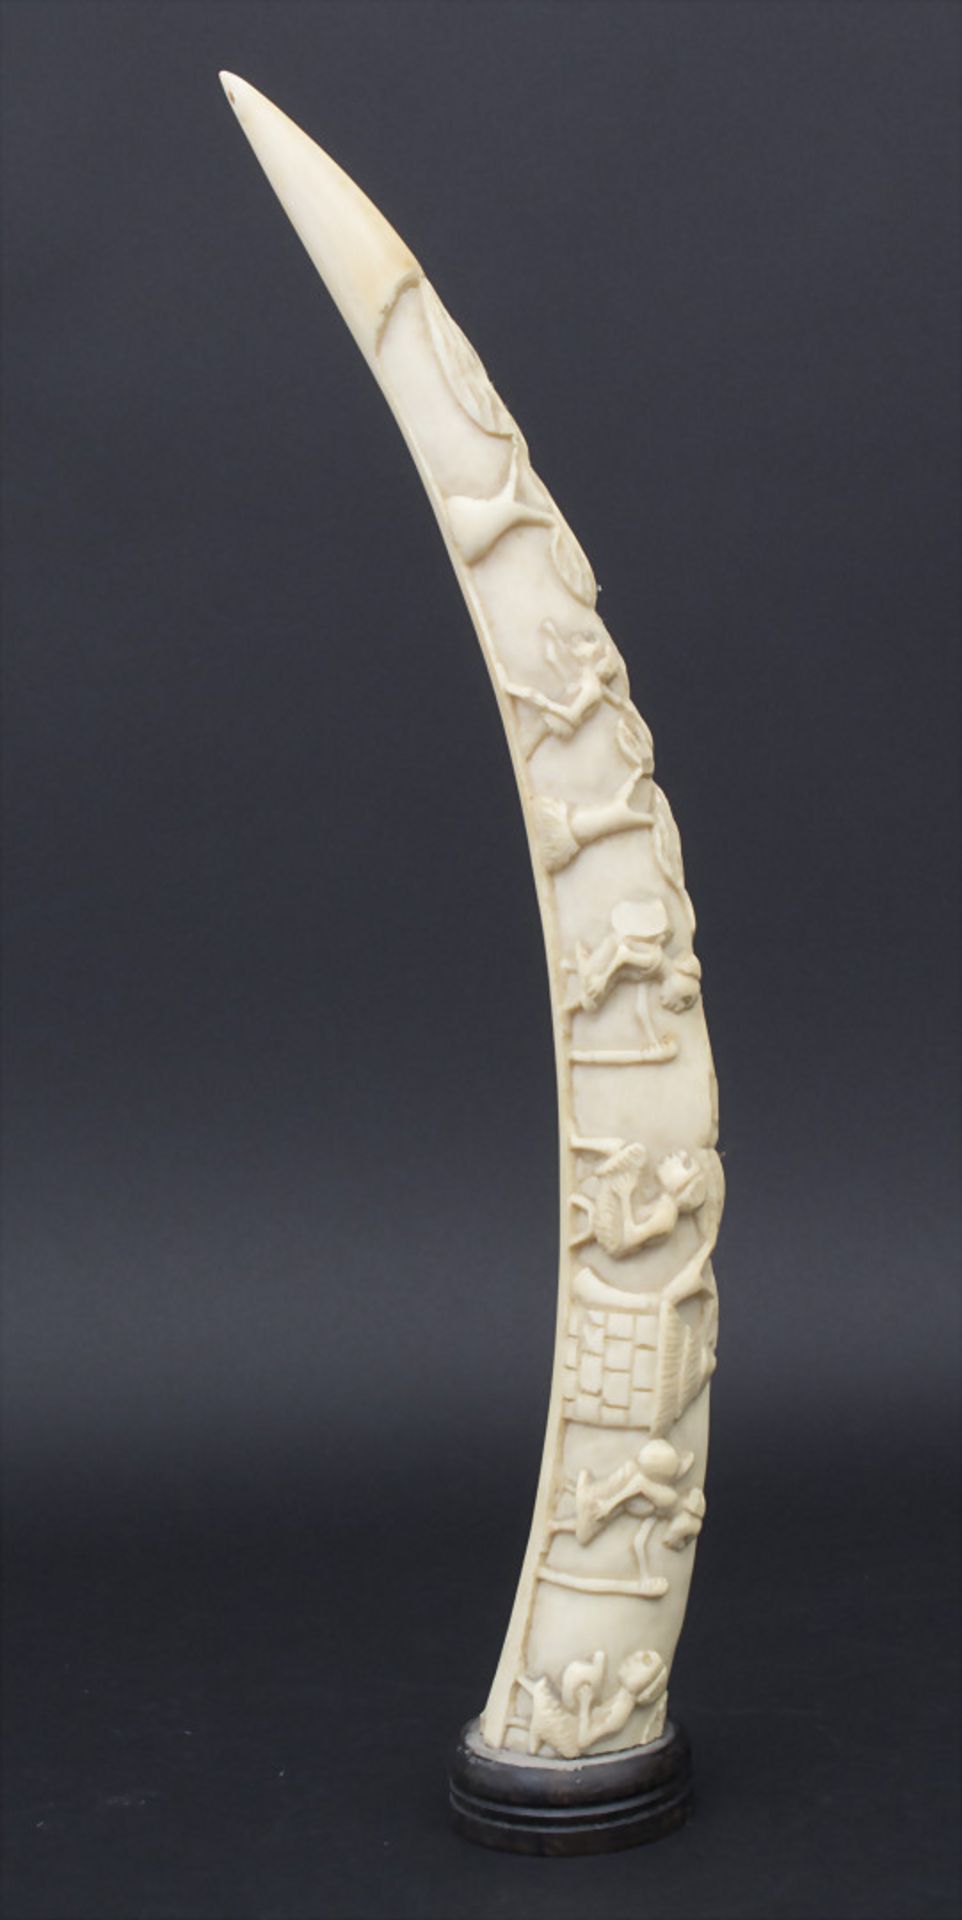 Große Elfenbein-Schnitzerei, Afrika, um 1900-20,Material: Elfenbein geschnitzt, HolzstandLänge: 55